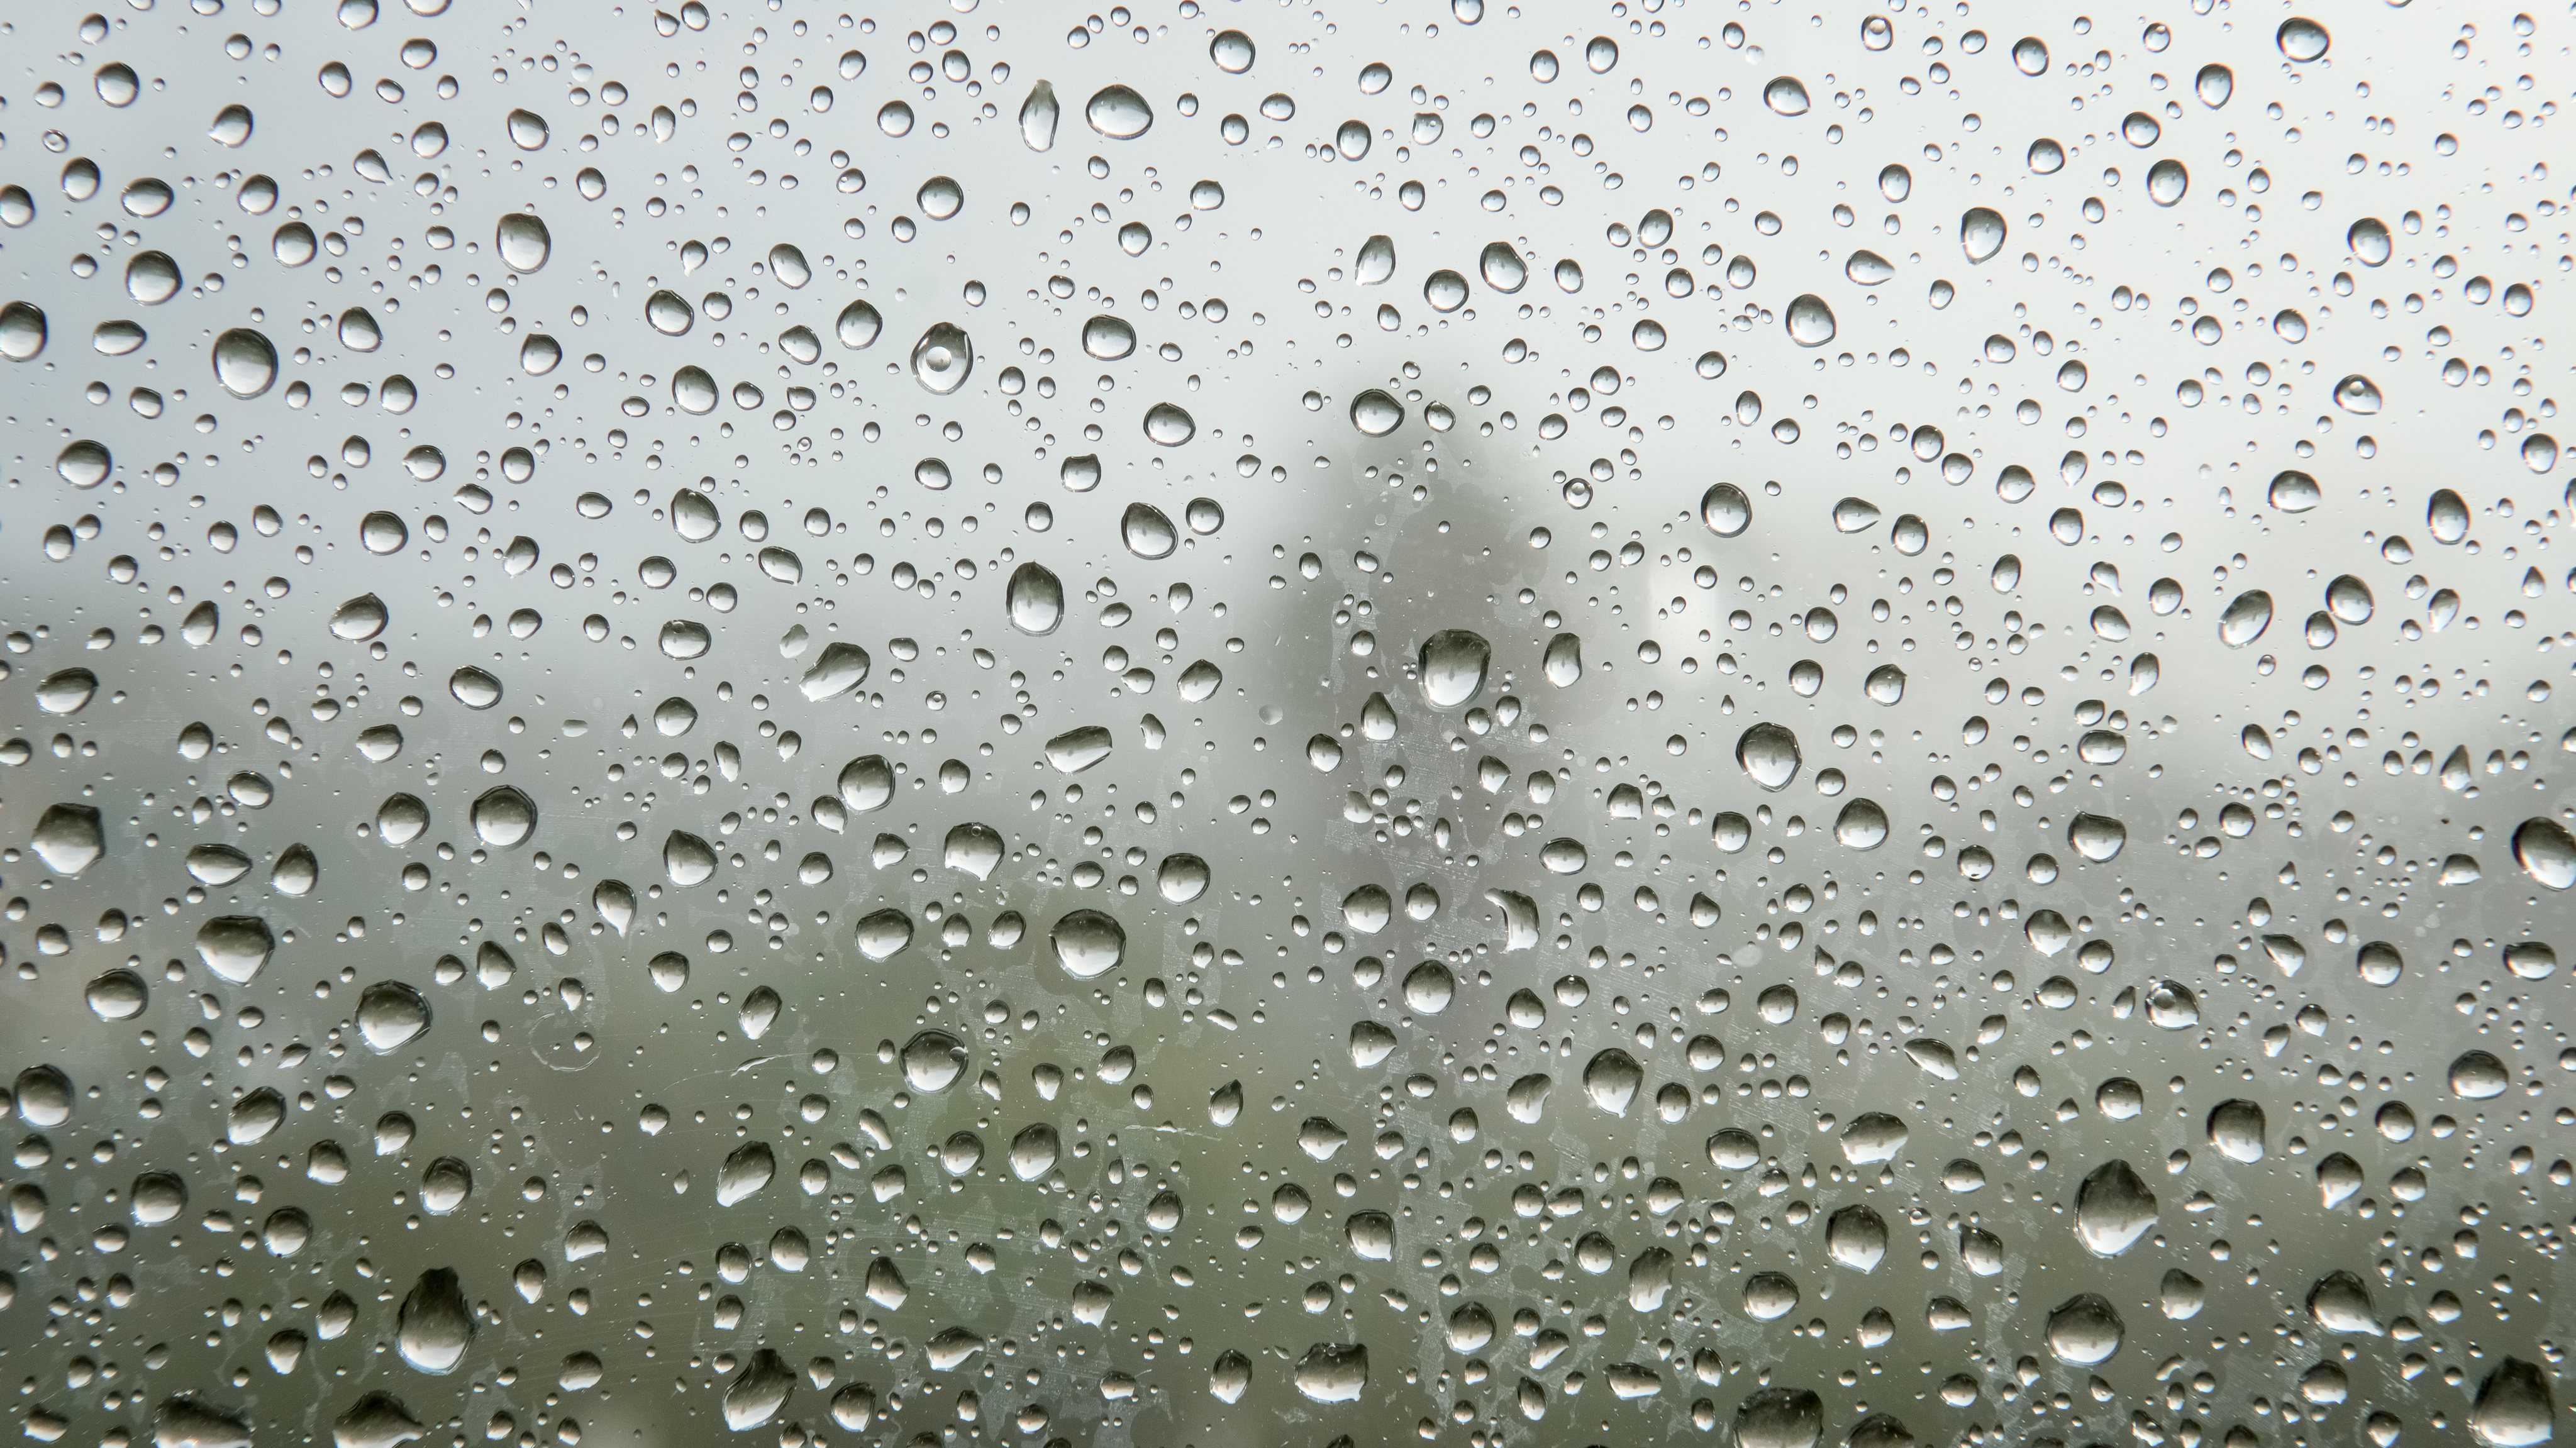 Rainy Day In Chania